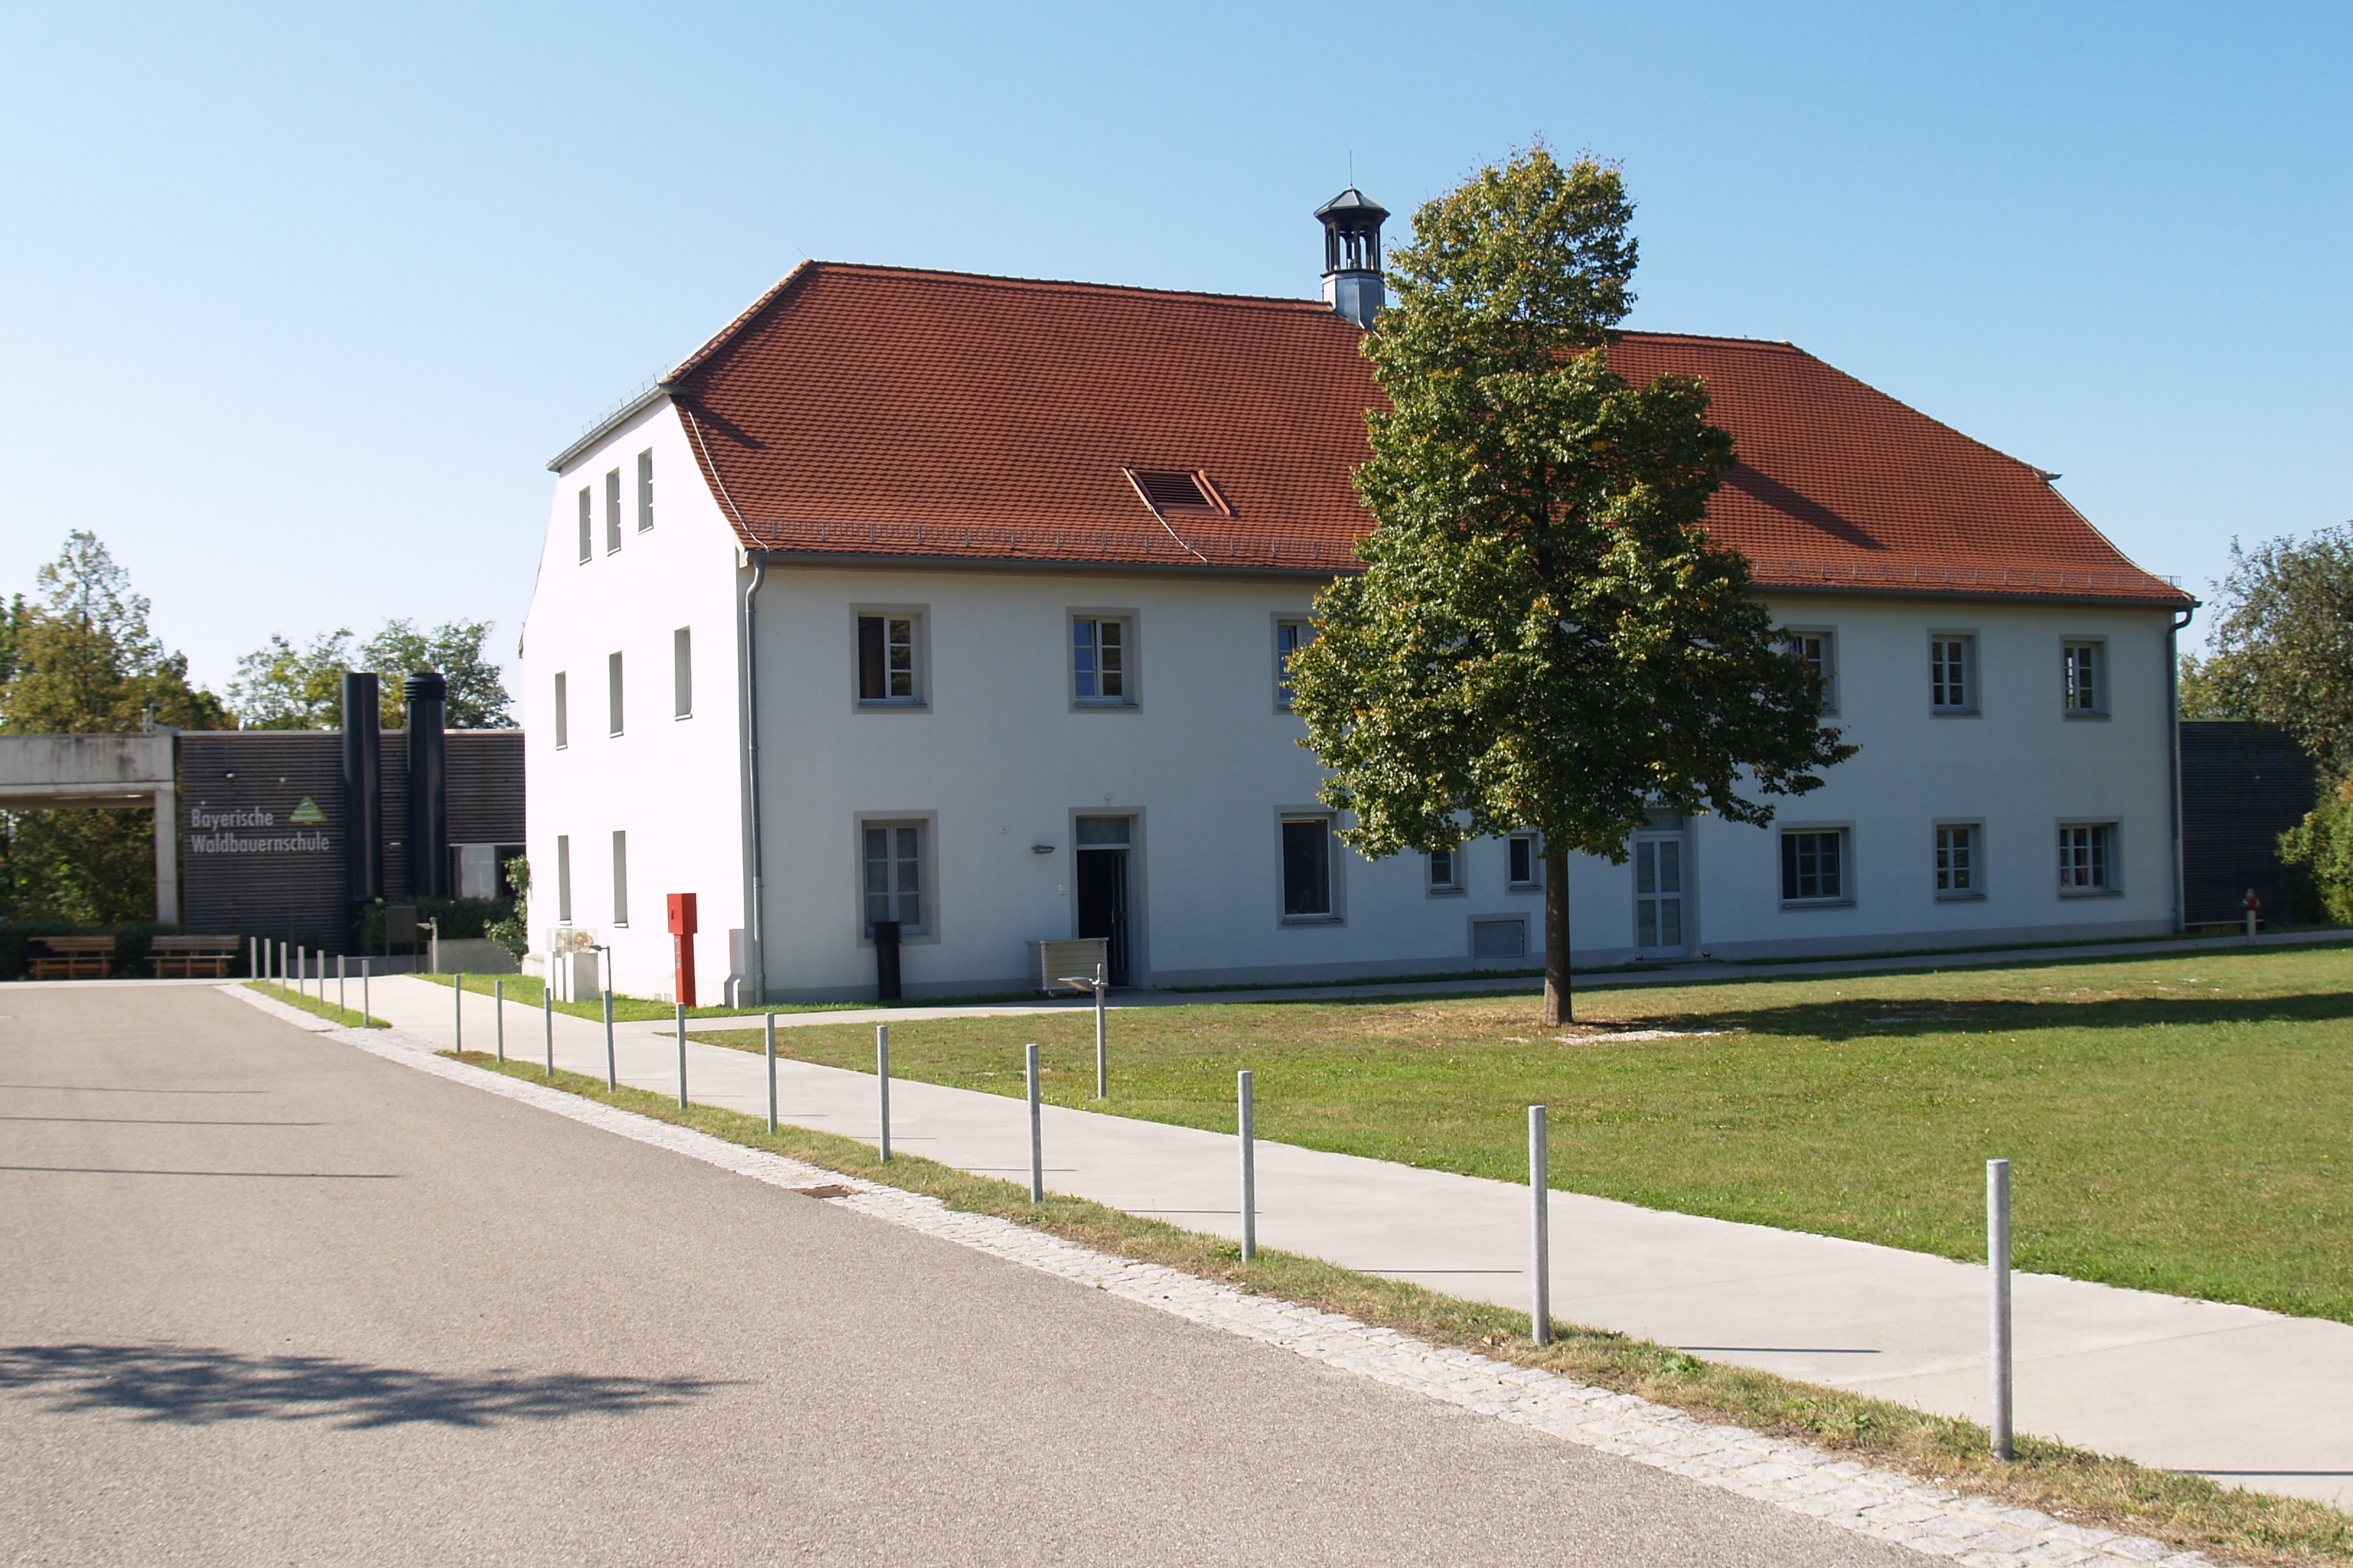 Die Bayerische Waldbauernschule Kehlheim ist das zentrale Kompetenzzentrum für die Aus- und Fortbildung von Waldbesitzern in Bayern